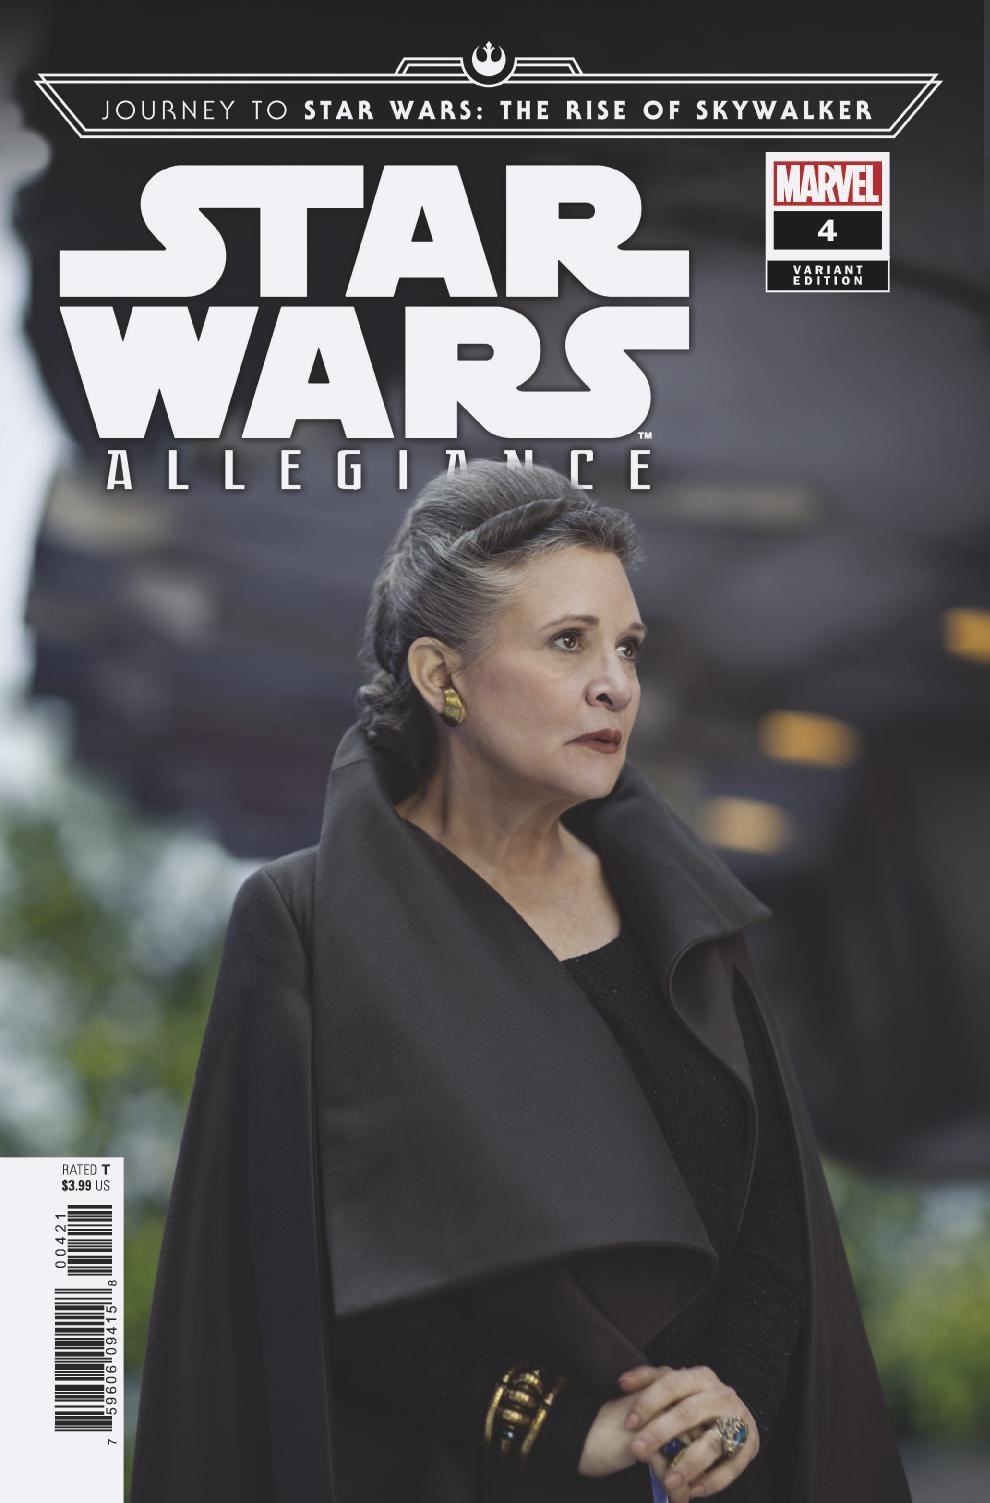 Allegiance #4 (Movie Variant Cover) (30.10.2019)